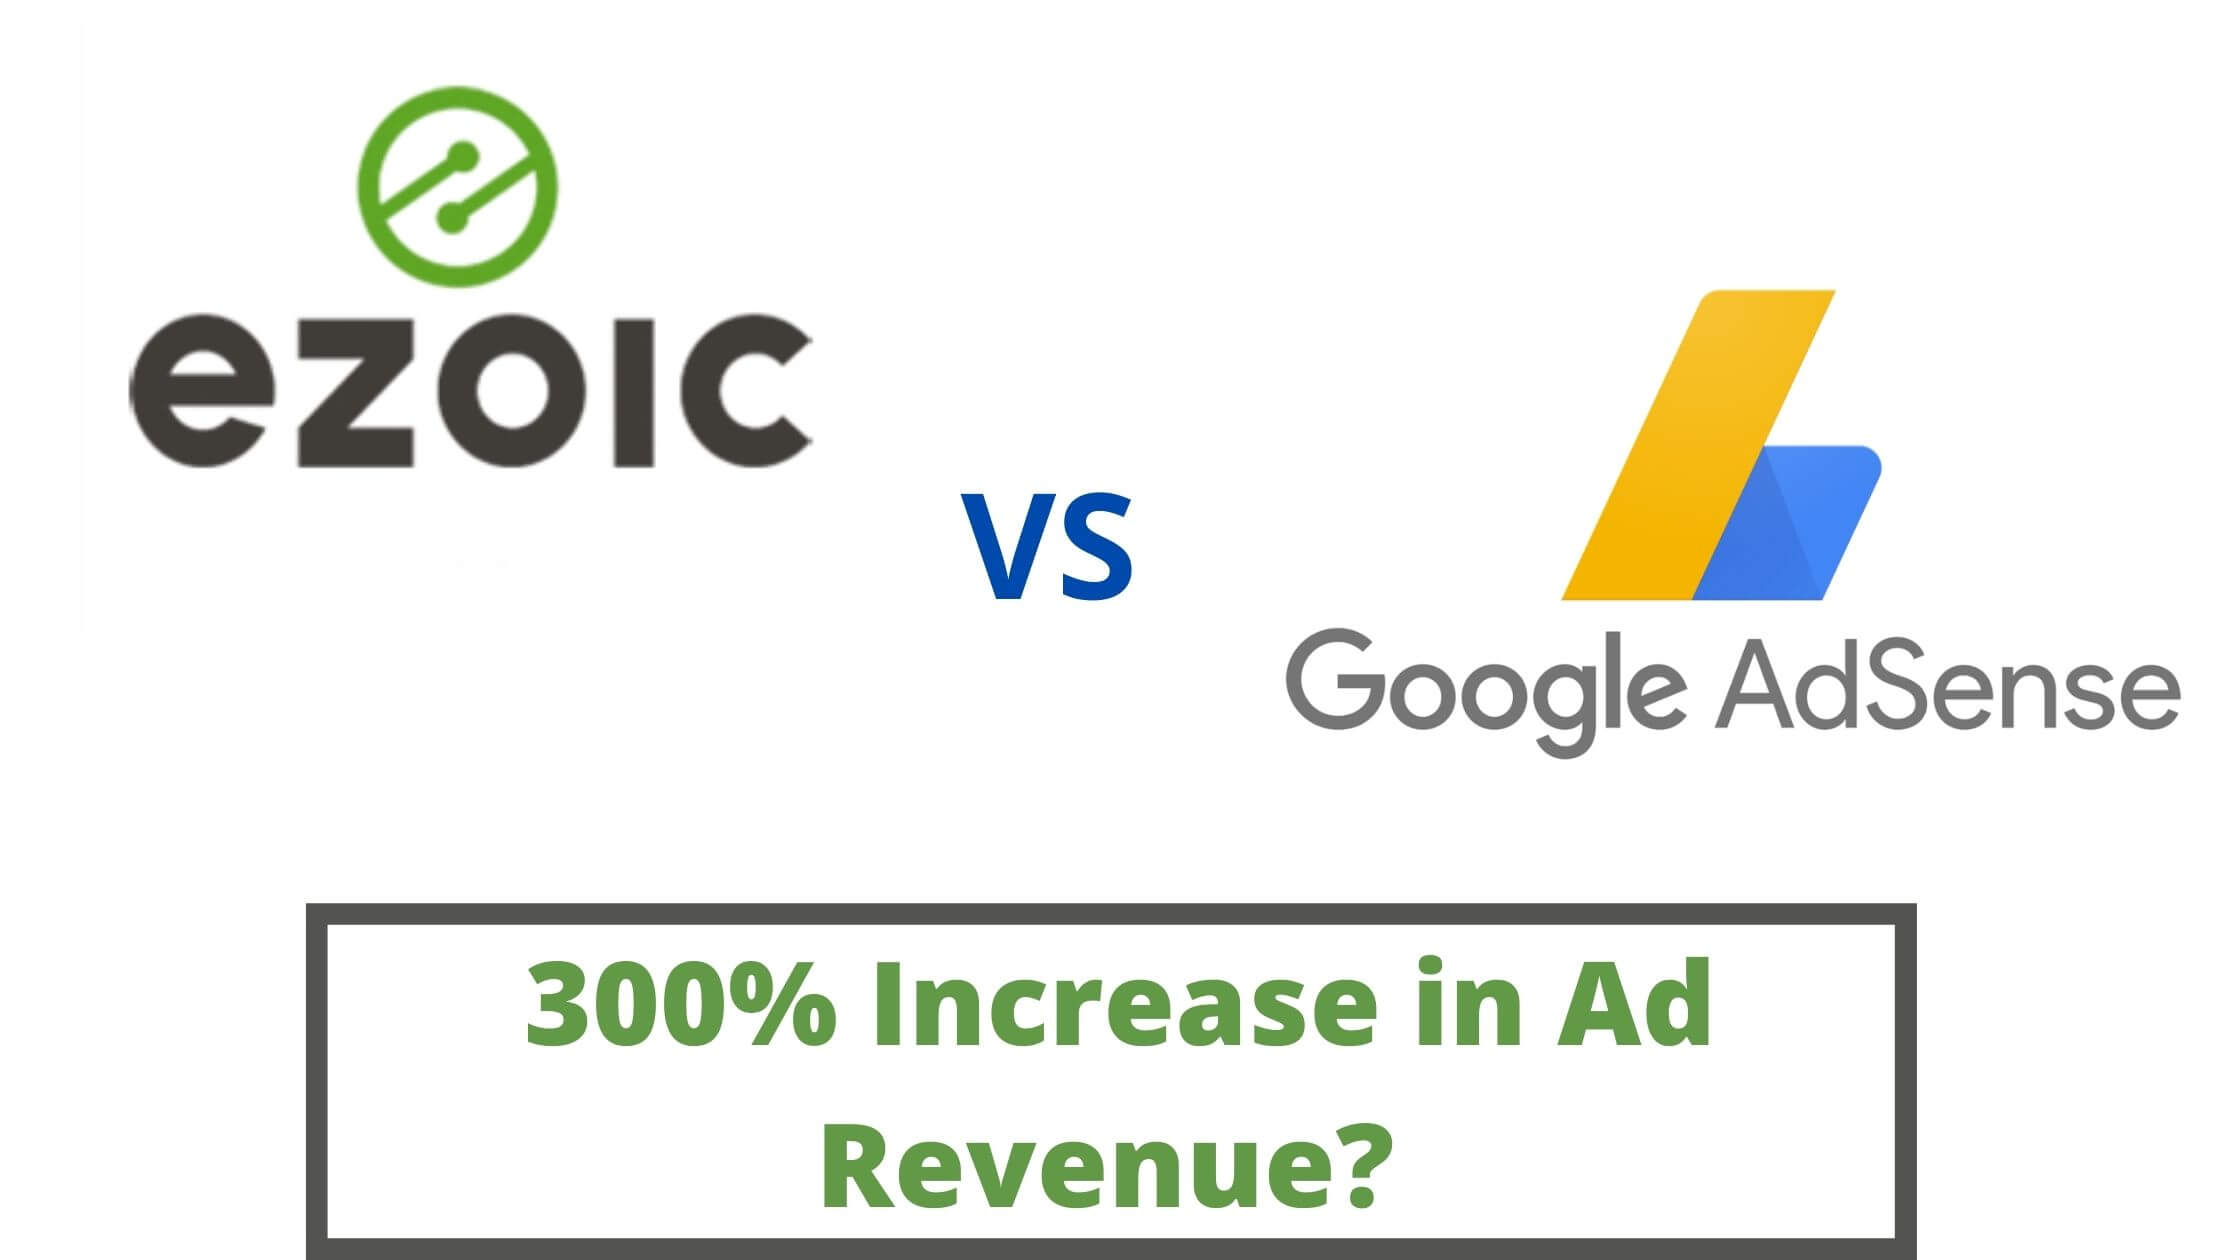 Ezoic vs Google AdSense Review